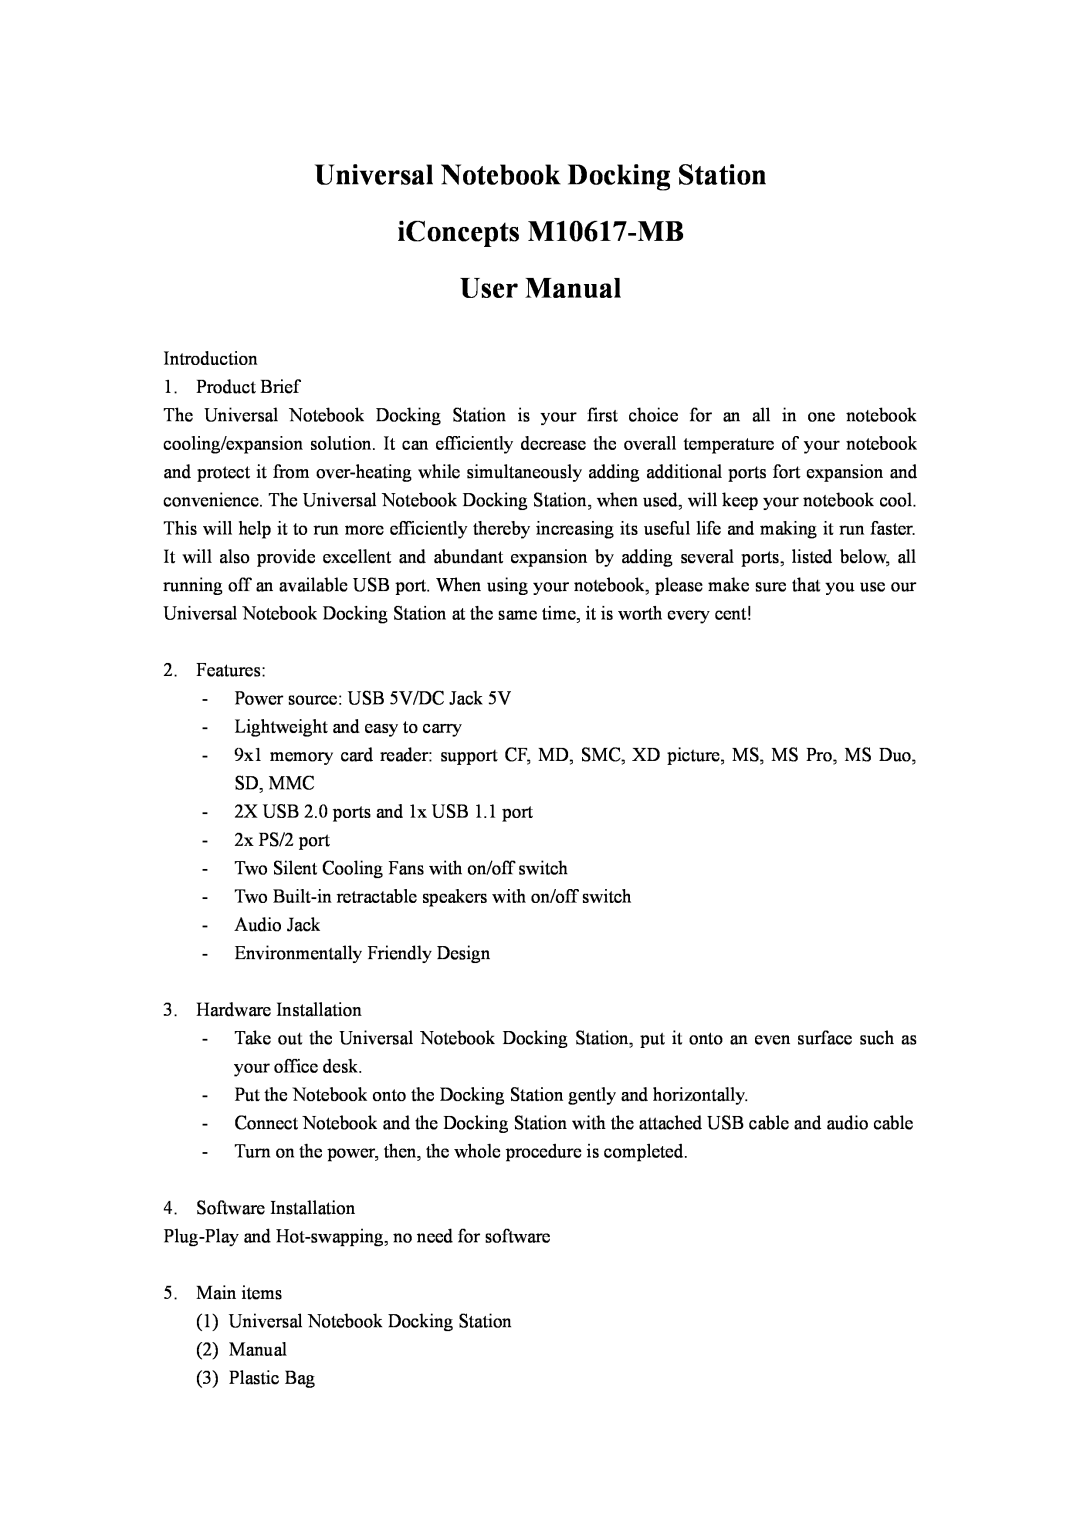 Sakar user manual Universal Notebook Docking Station iConcepts M10617-MB User Manual 